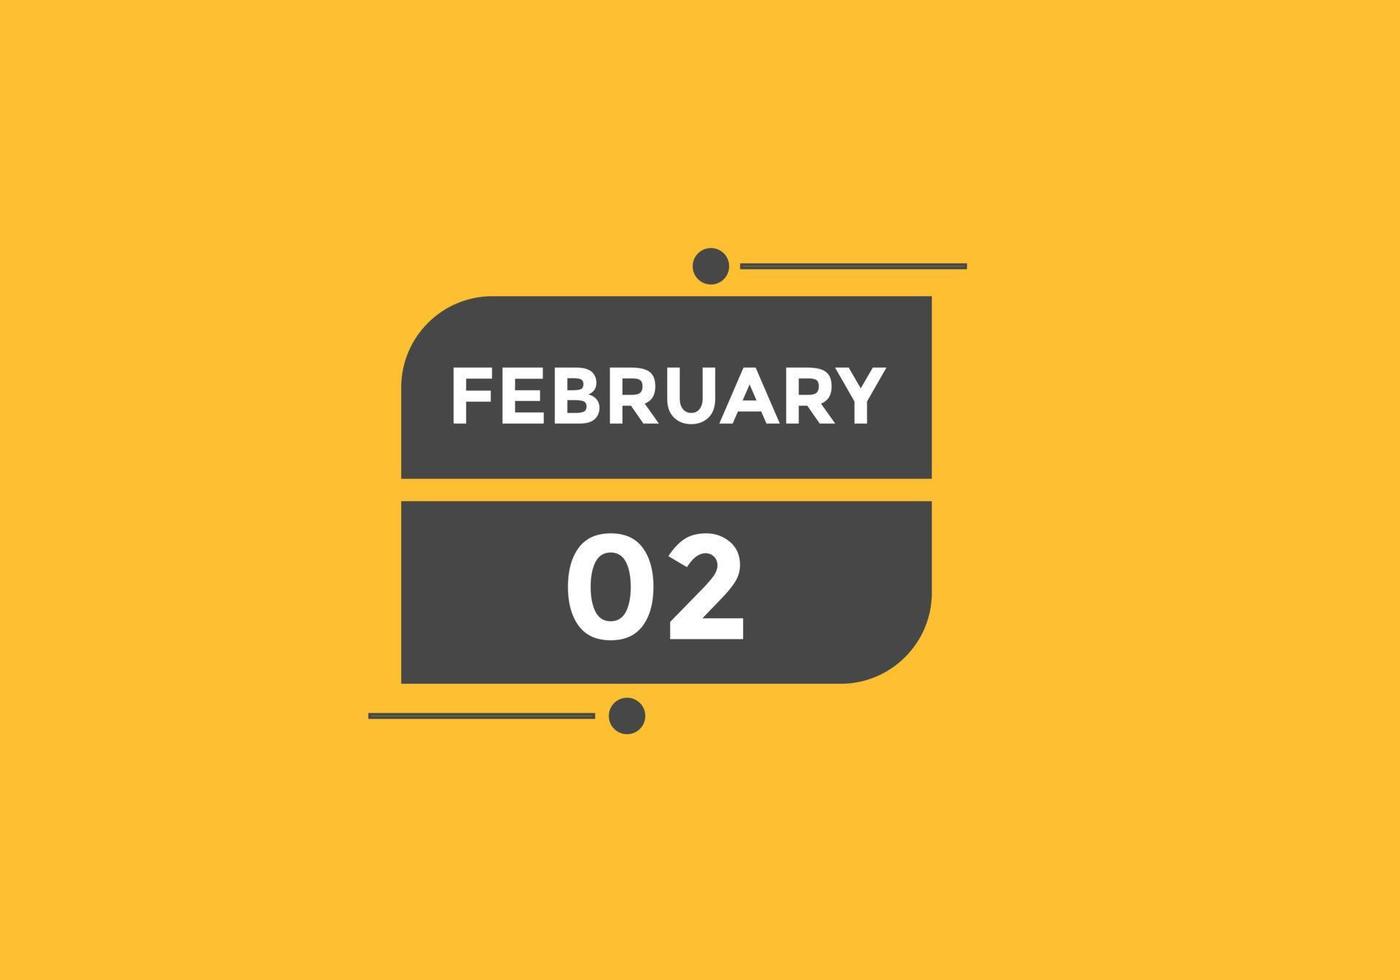 rappel du calendrier du 2 février. Modèle d'icône de calendrier quotidien du 2 février. modèle de conception d'icône calendrier 2 février. illustration vectorielle vecteur